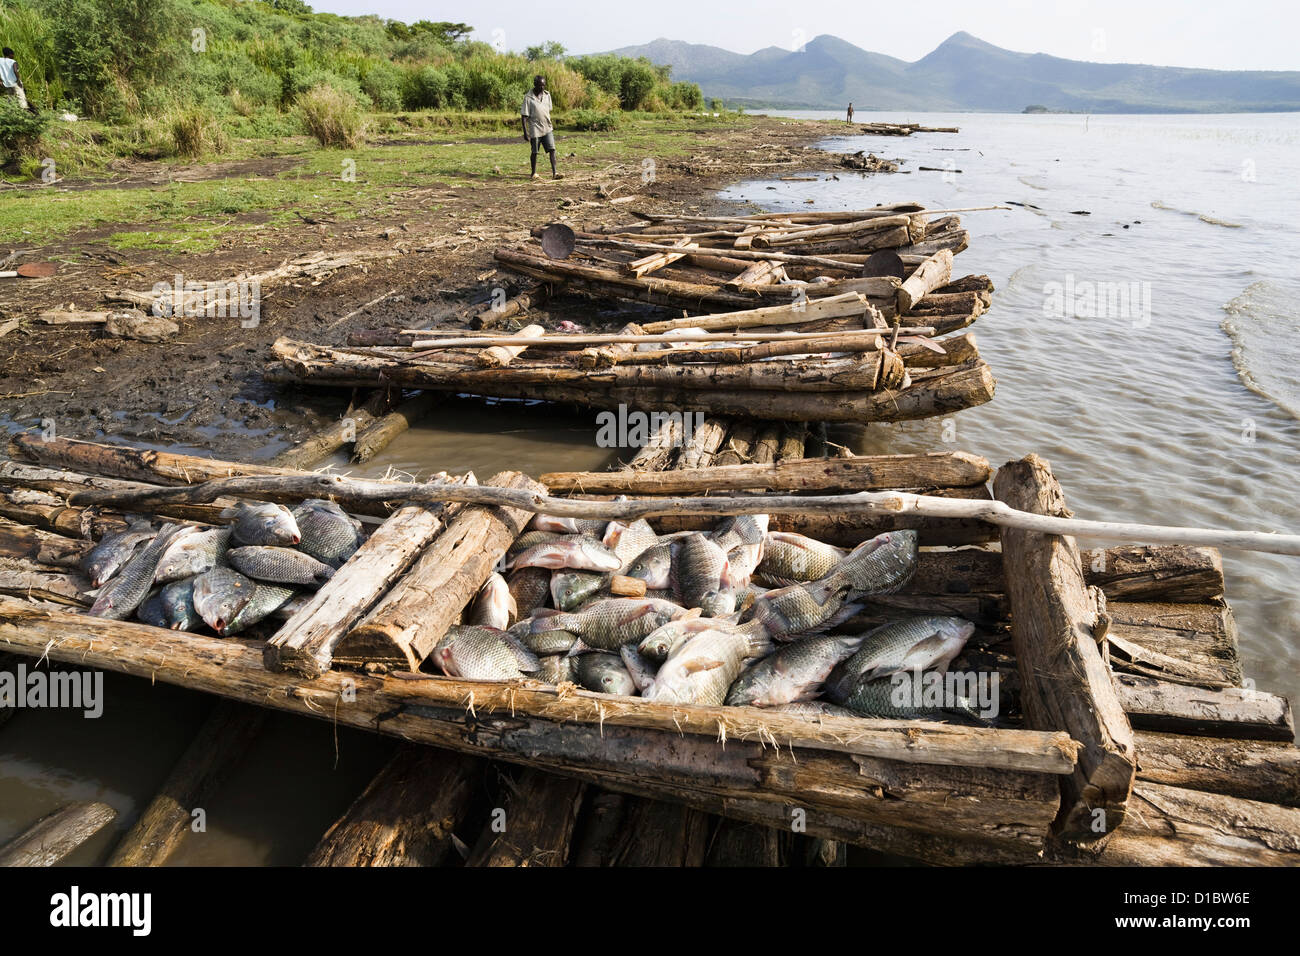 Los pescadores en el lago Chamo, Arba Minch, Etiopía. Los pescadores con sus barcas y sus capturas en la playa Foto de stock